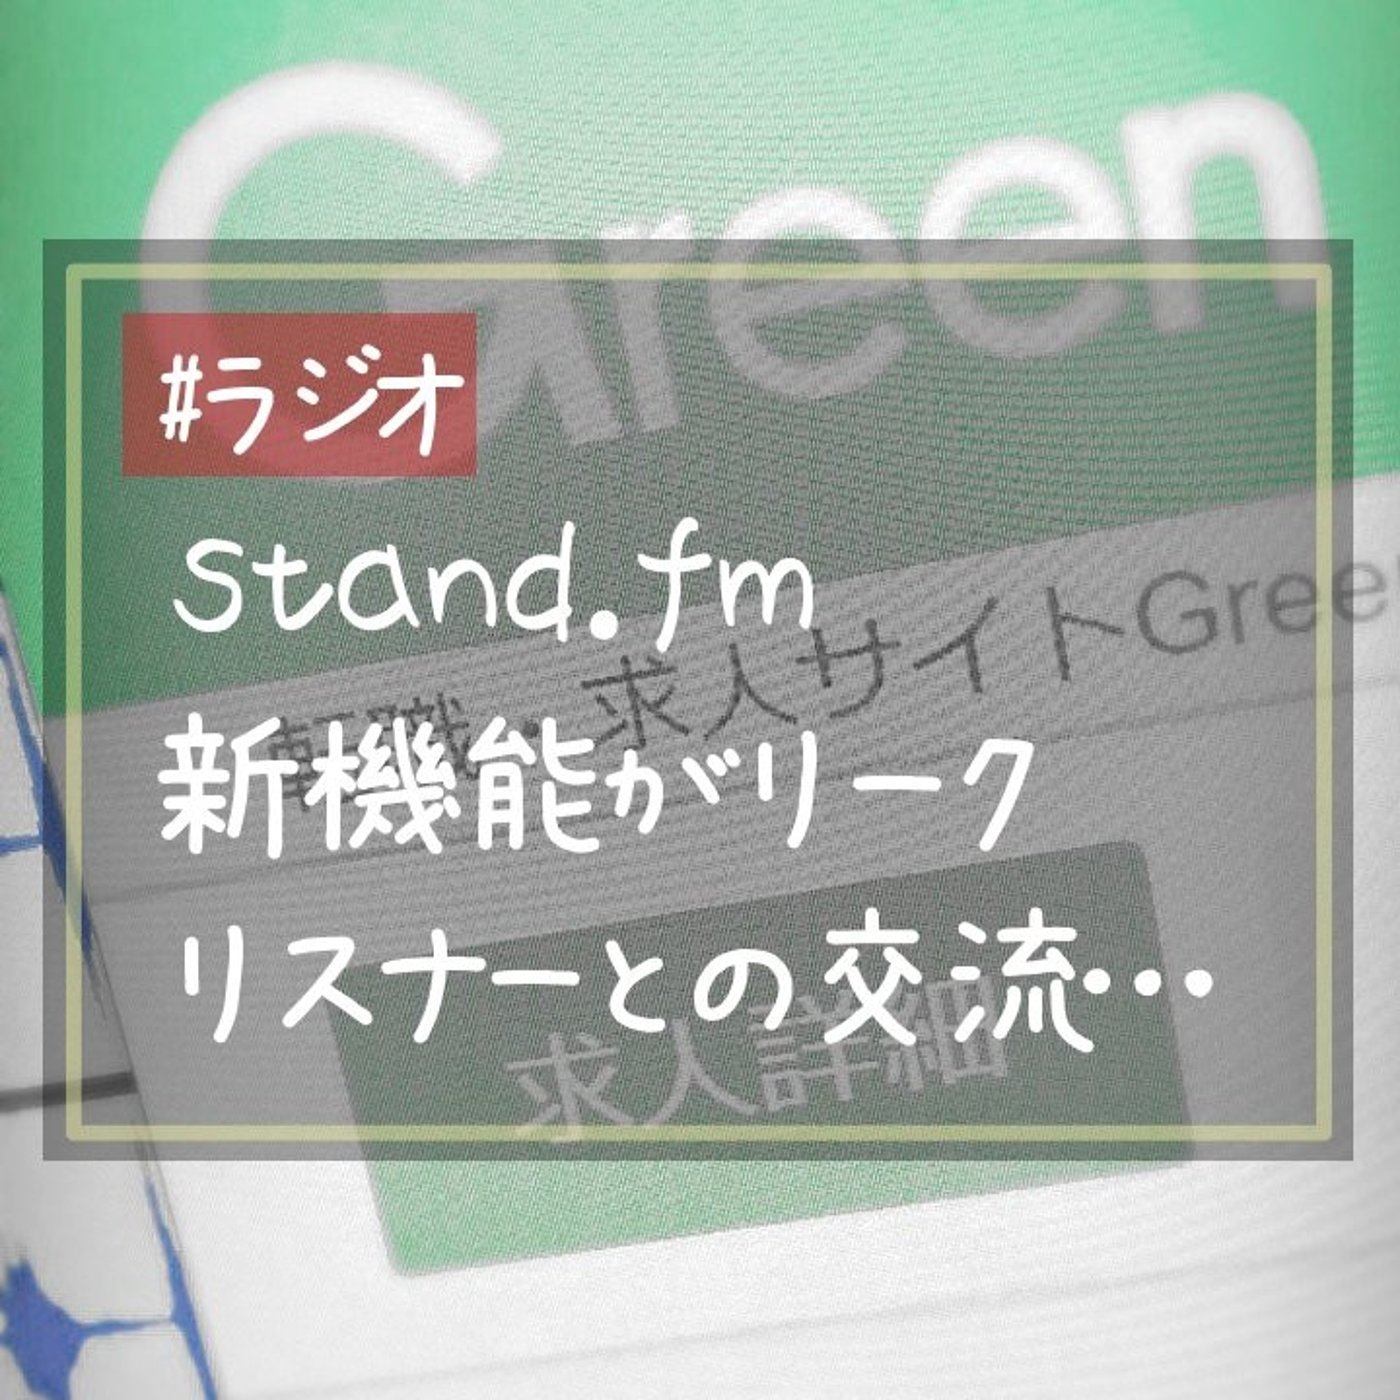 【概要欄に訂正あり】stand.fmが実装予定の新機能が求人情報からリーク